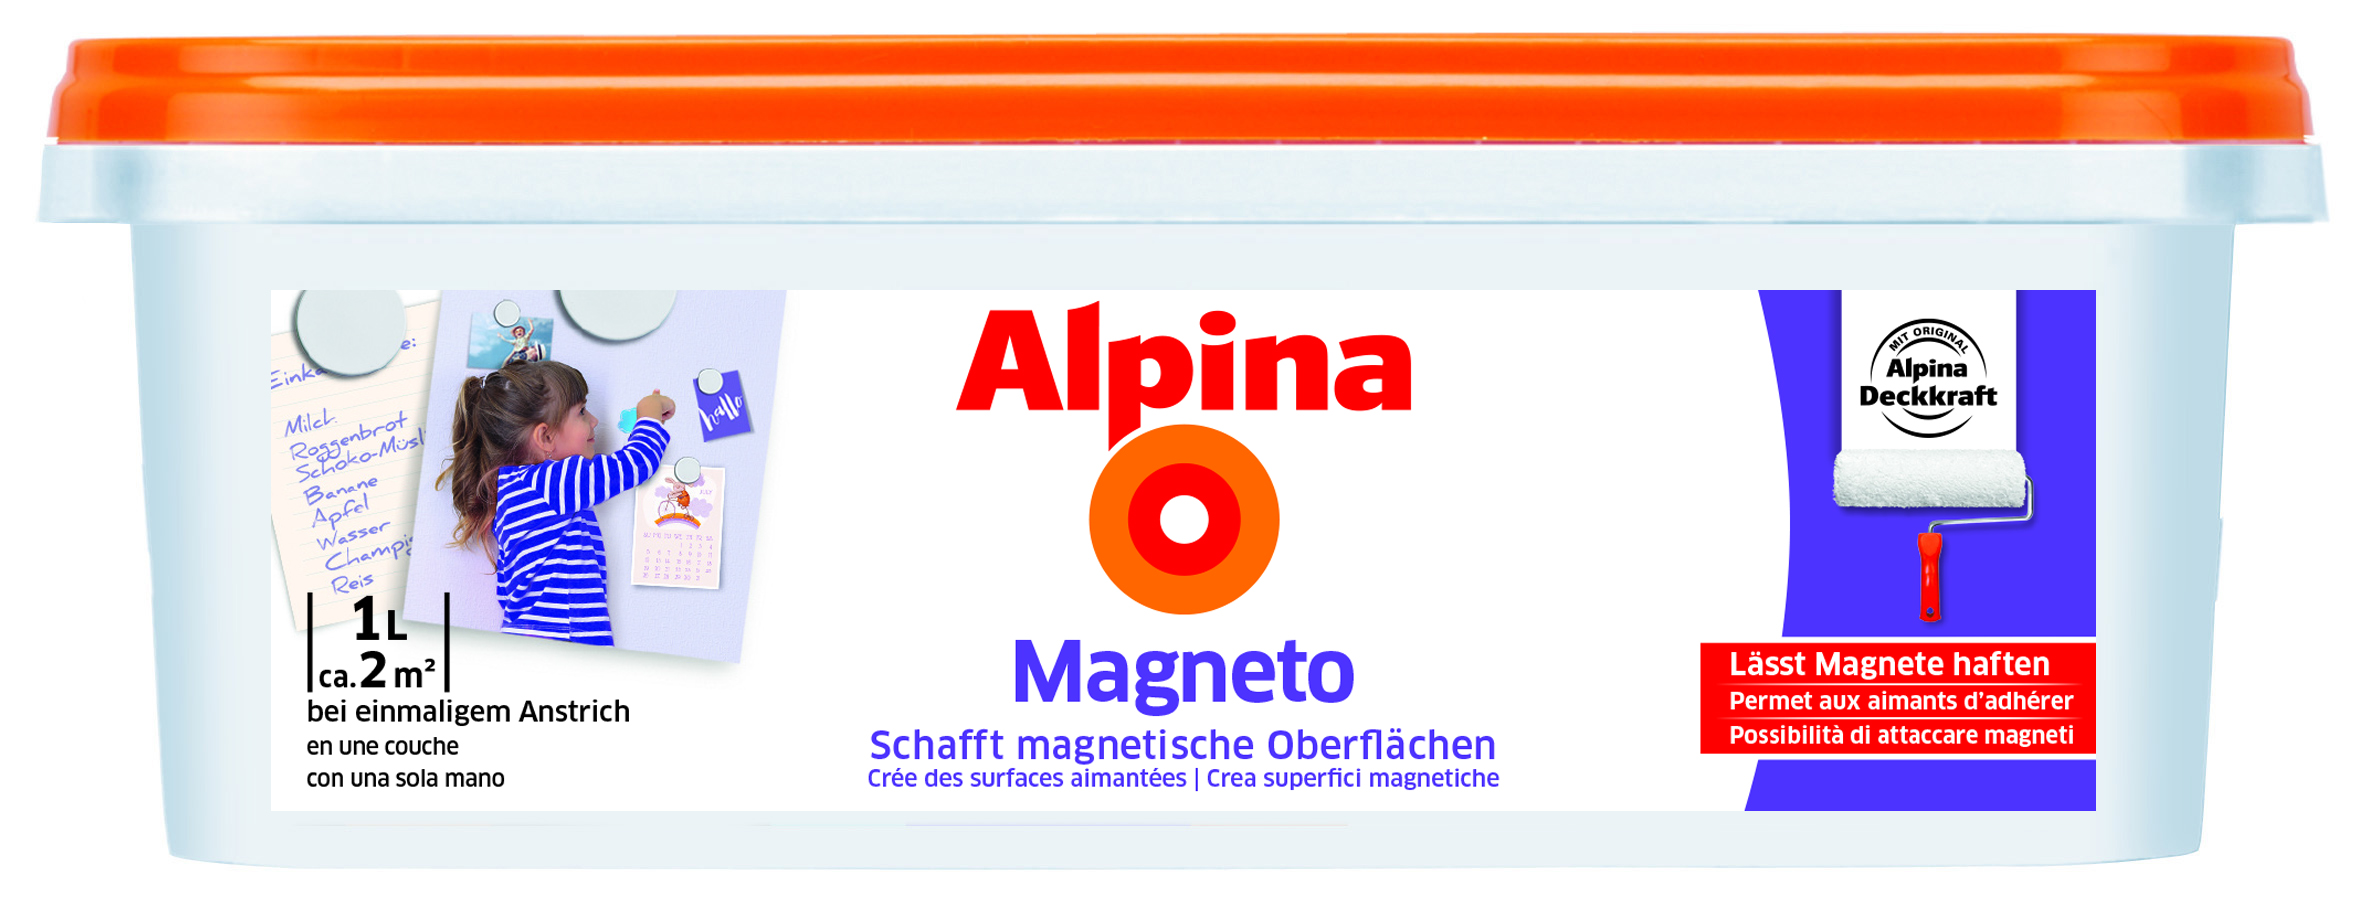 Alpina Magneto silbergrau, 1L